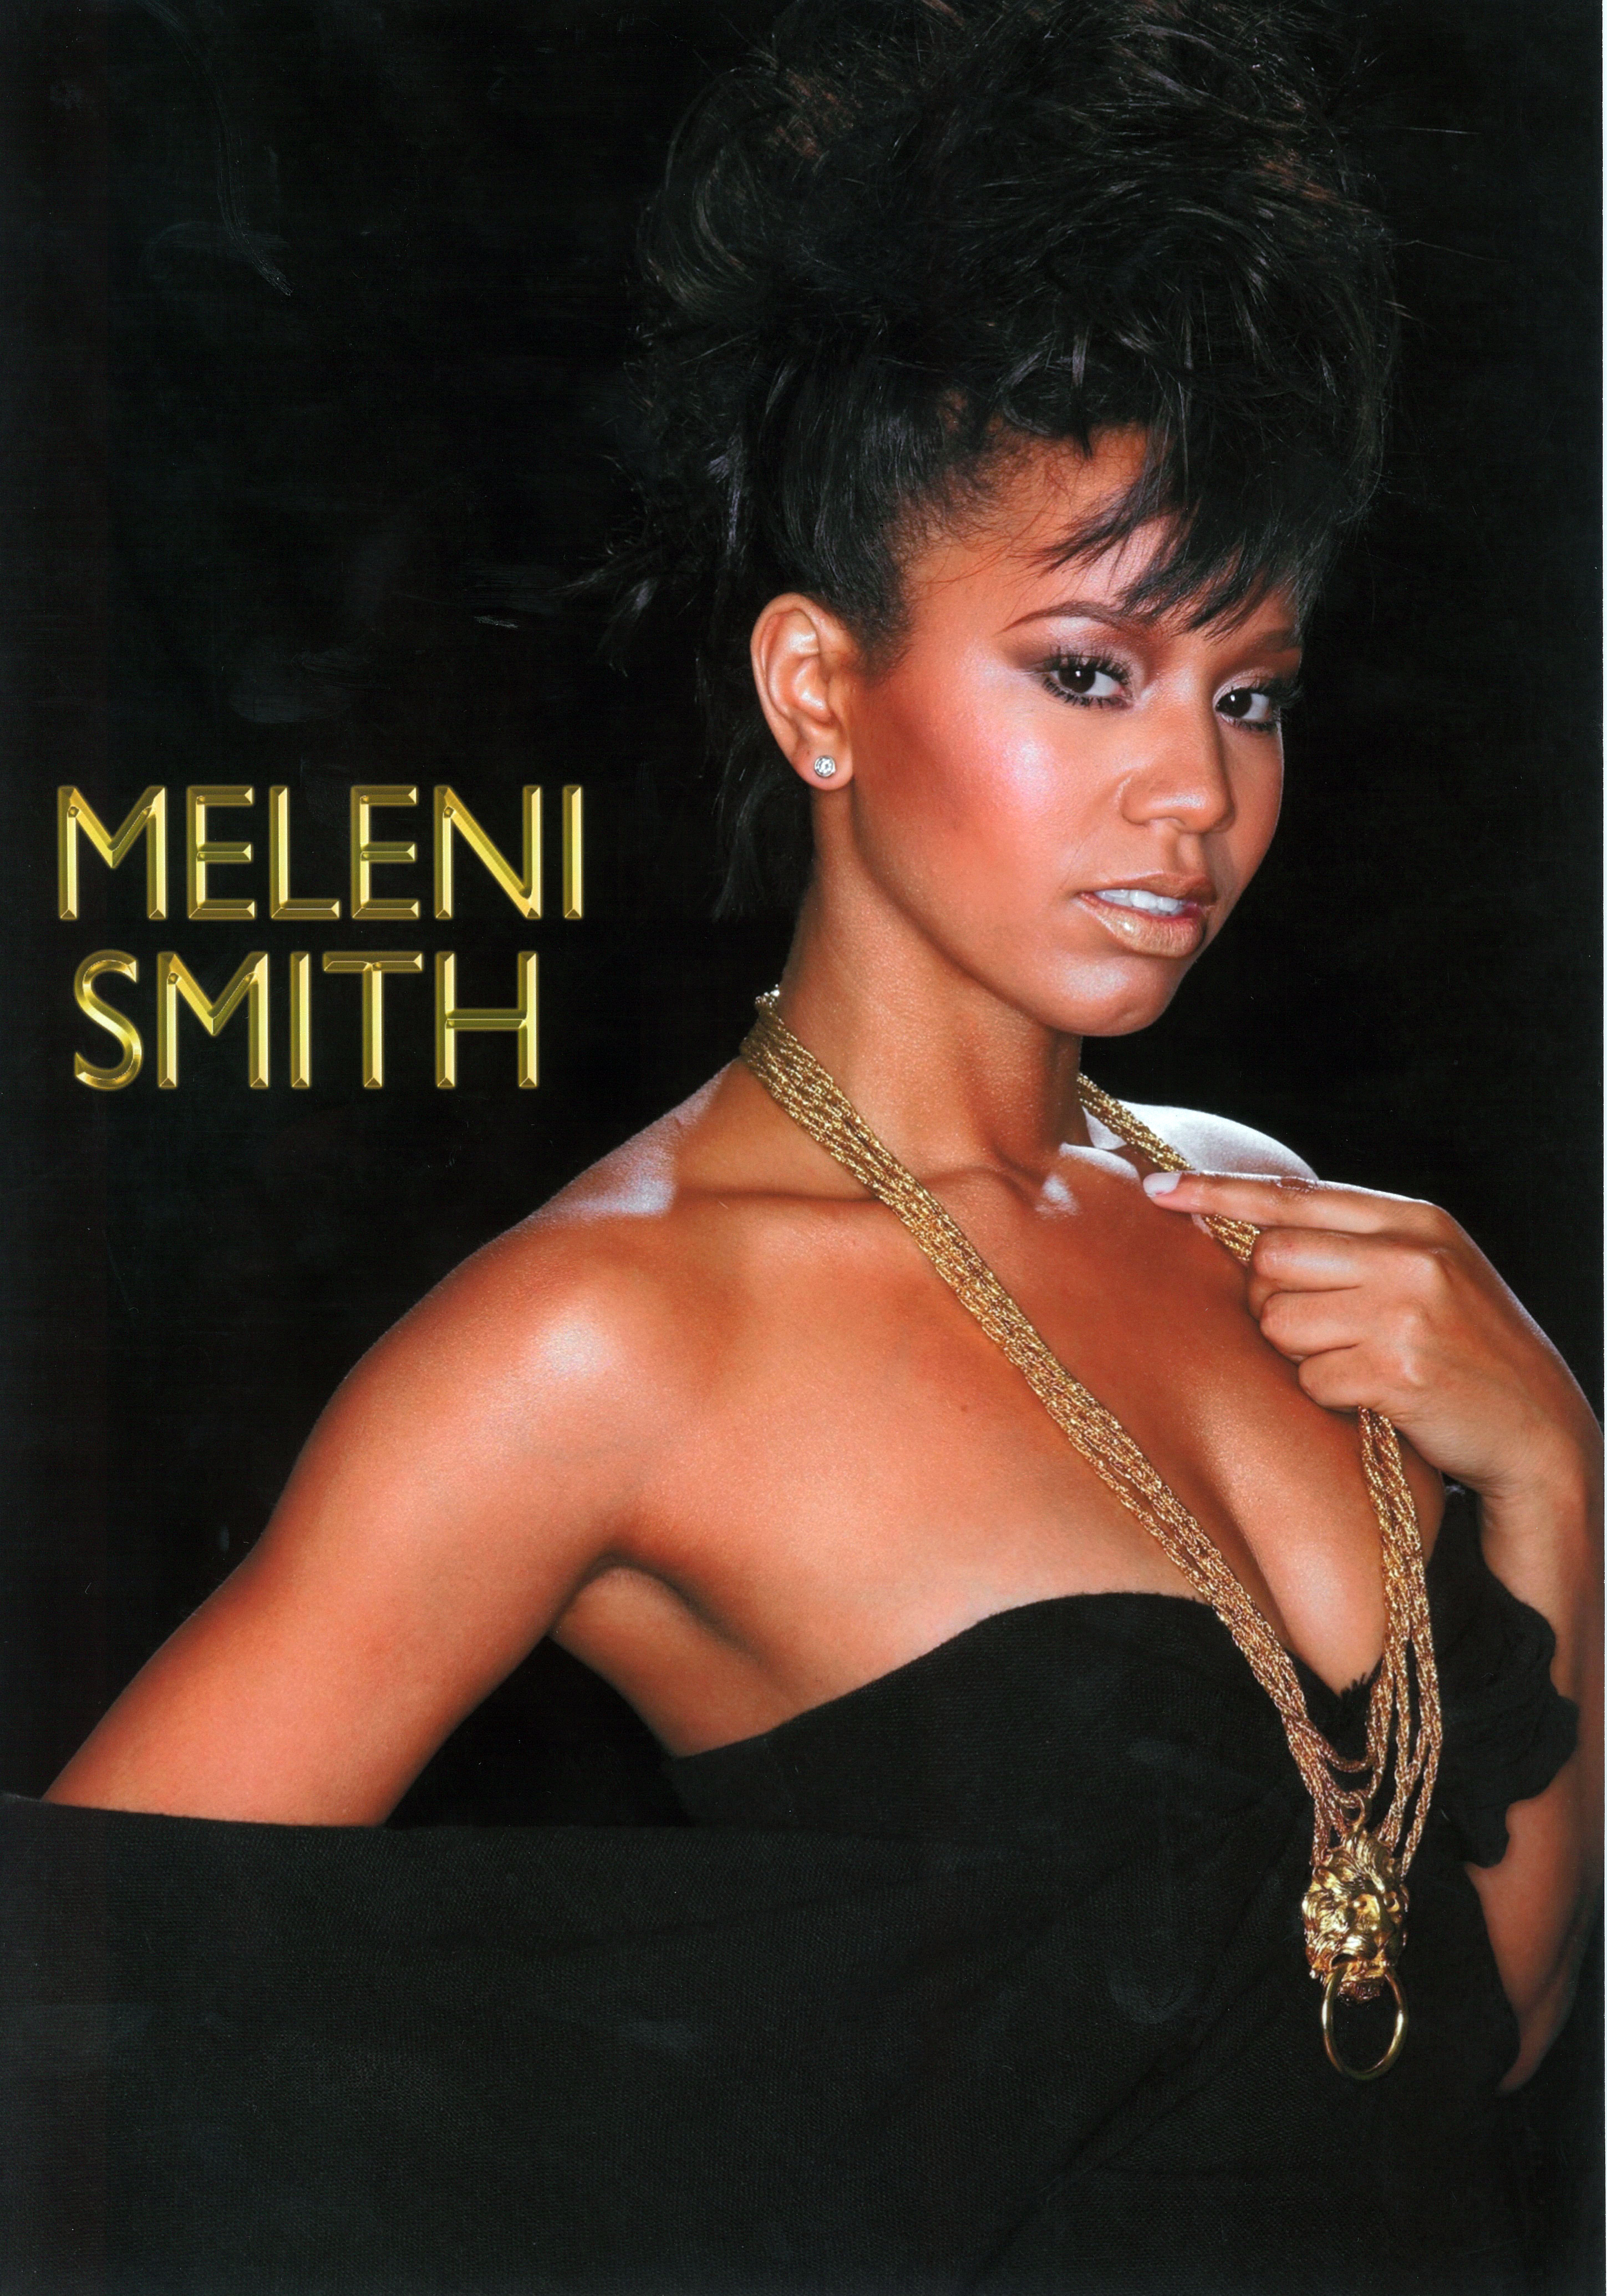 Meleni smith song writer/singer test shoot.